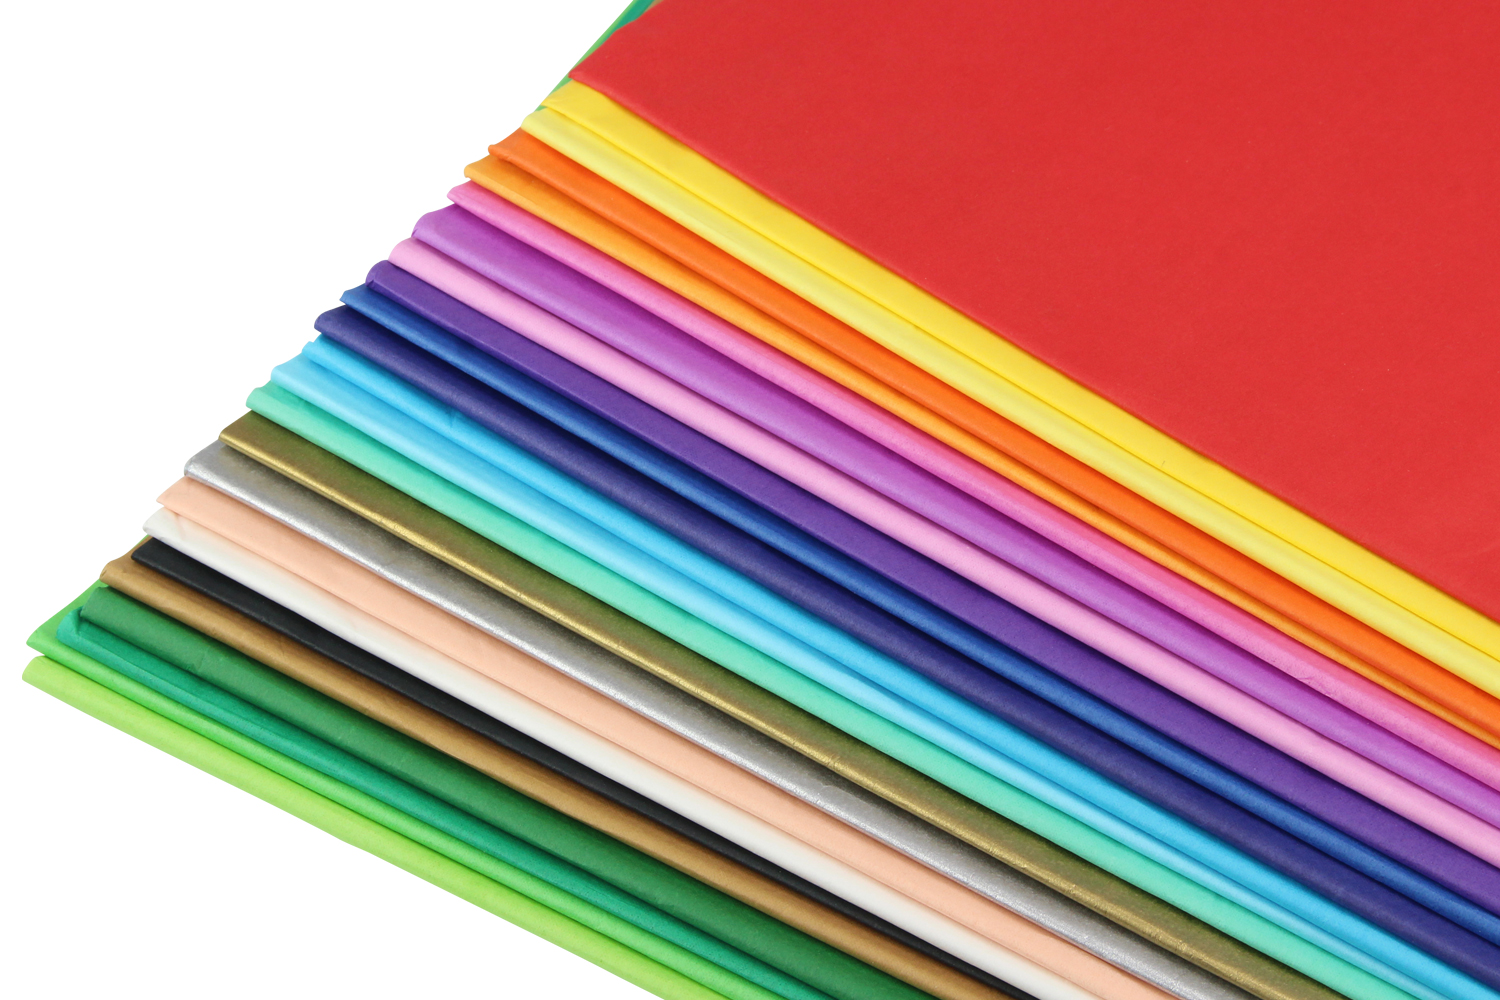 Papier de soie en 10 couleurs - 50x70cm - AUSA